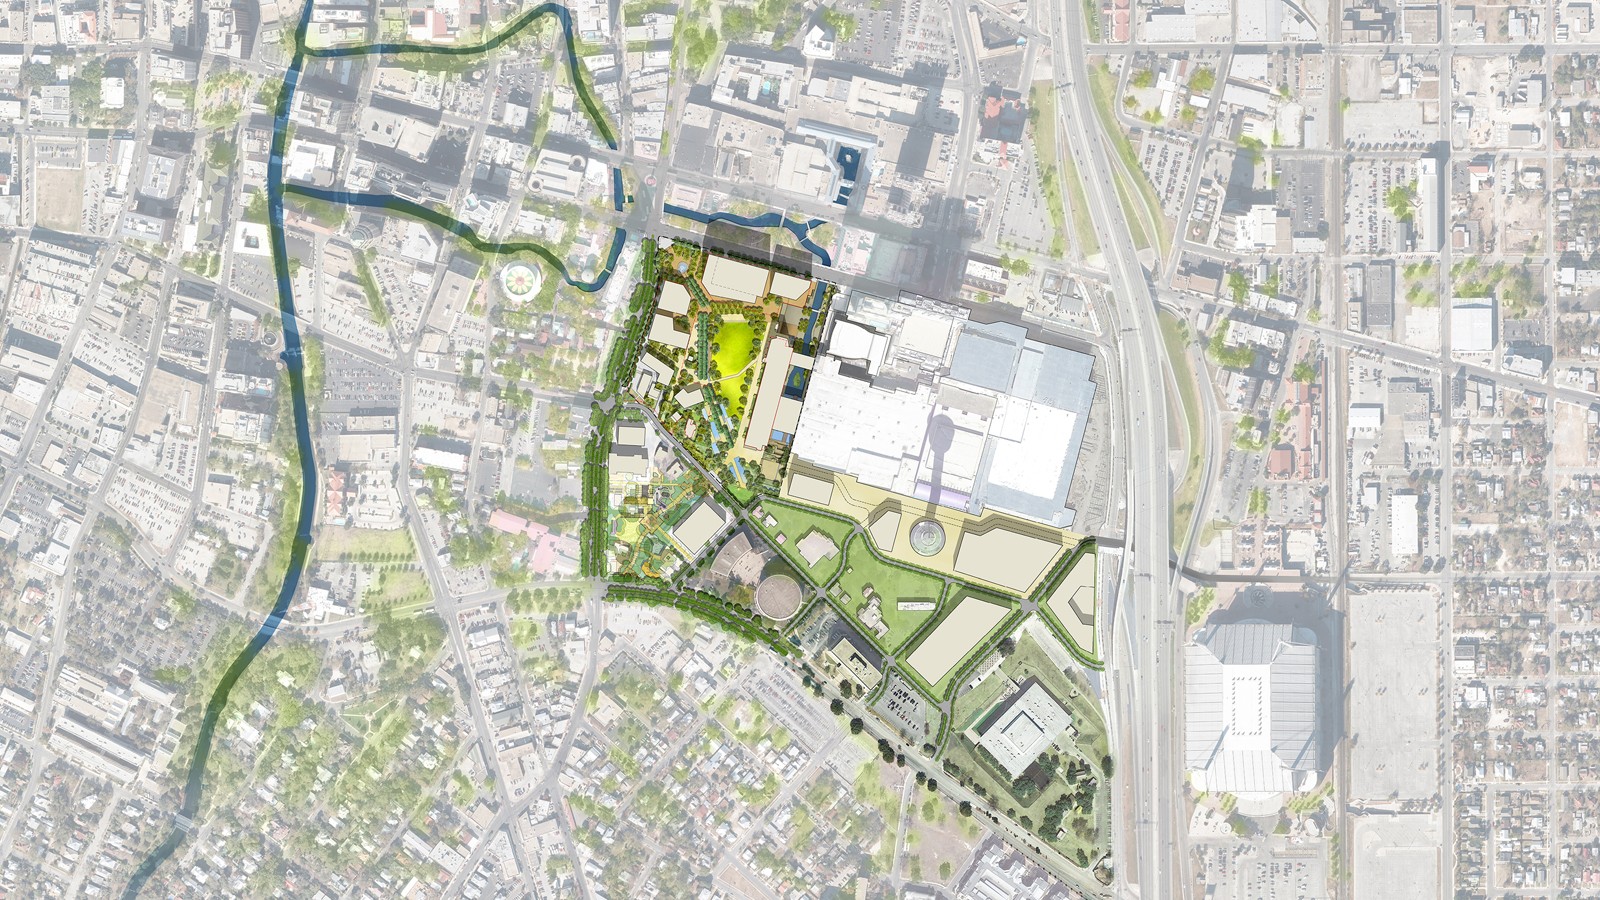 Hemisfair Park - Plan courtesy the Hemisfair Park Area Redevelopment Corporation